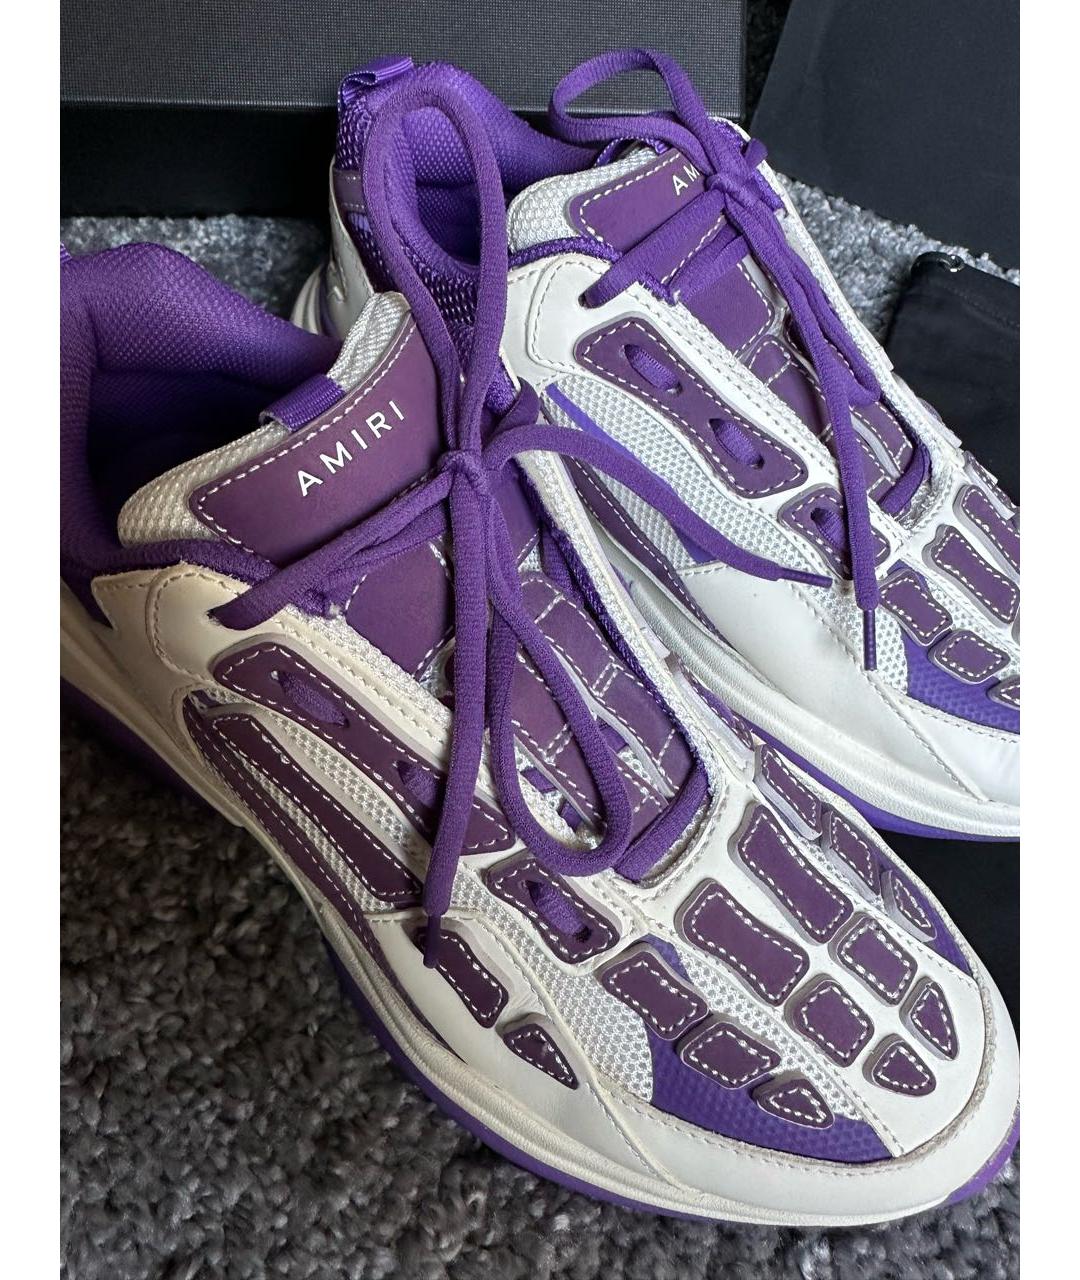 Низкие кроссовки / кеды AMIRI для мужчин купить за 59990 руб, арт. 1423940  – Интернет-магазин Oskelly